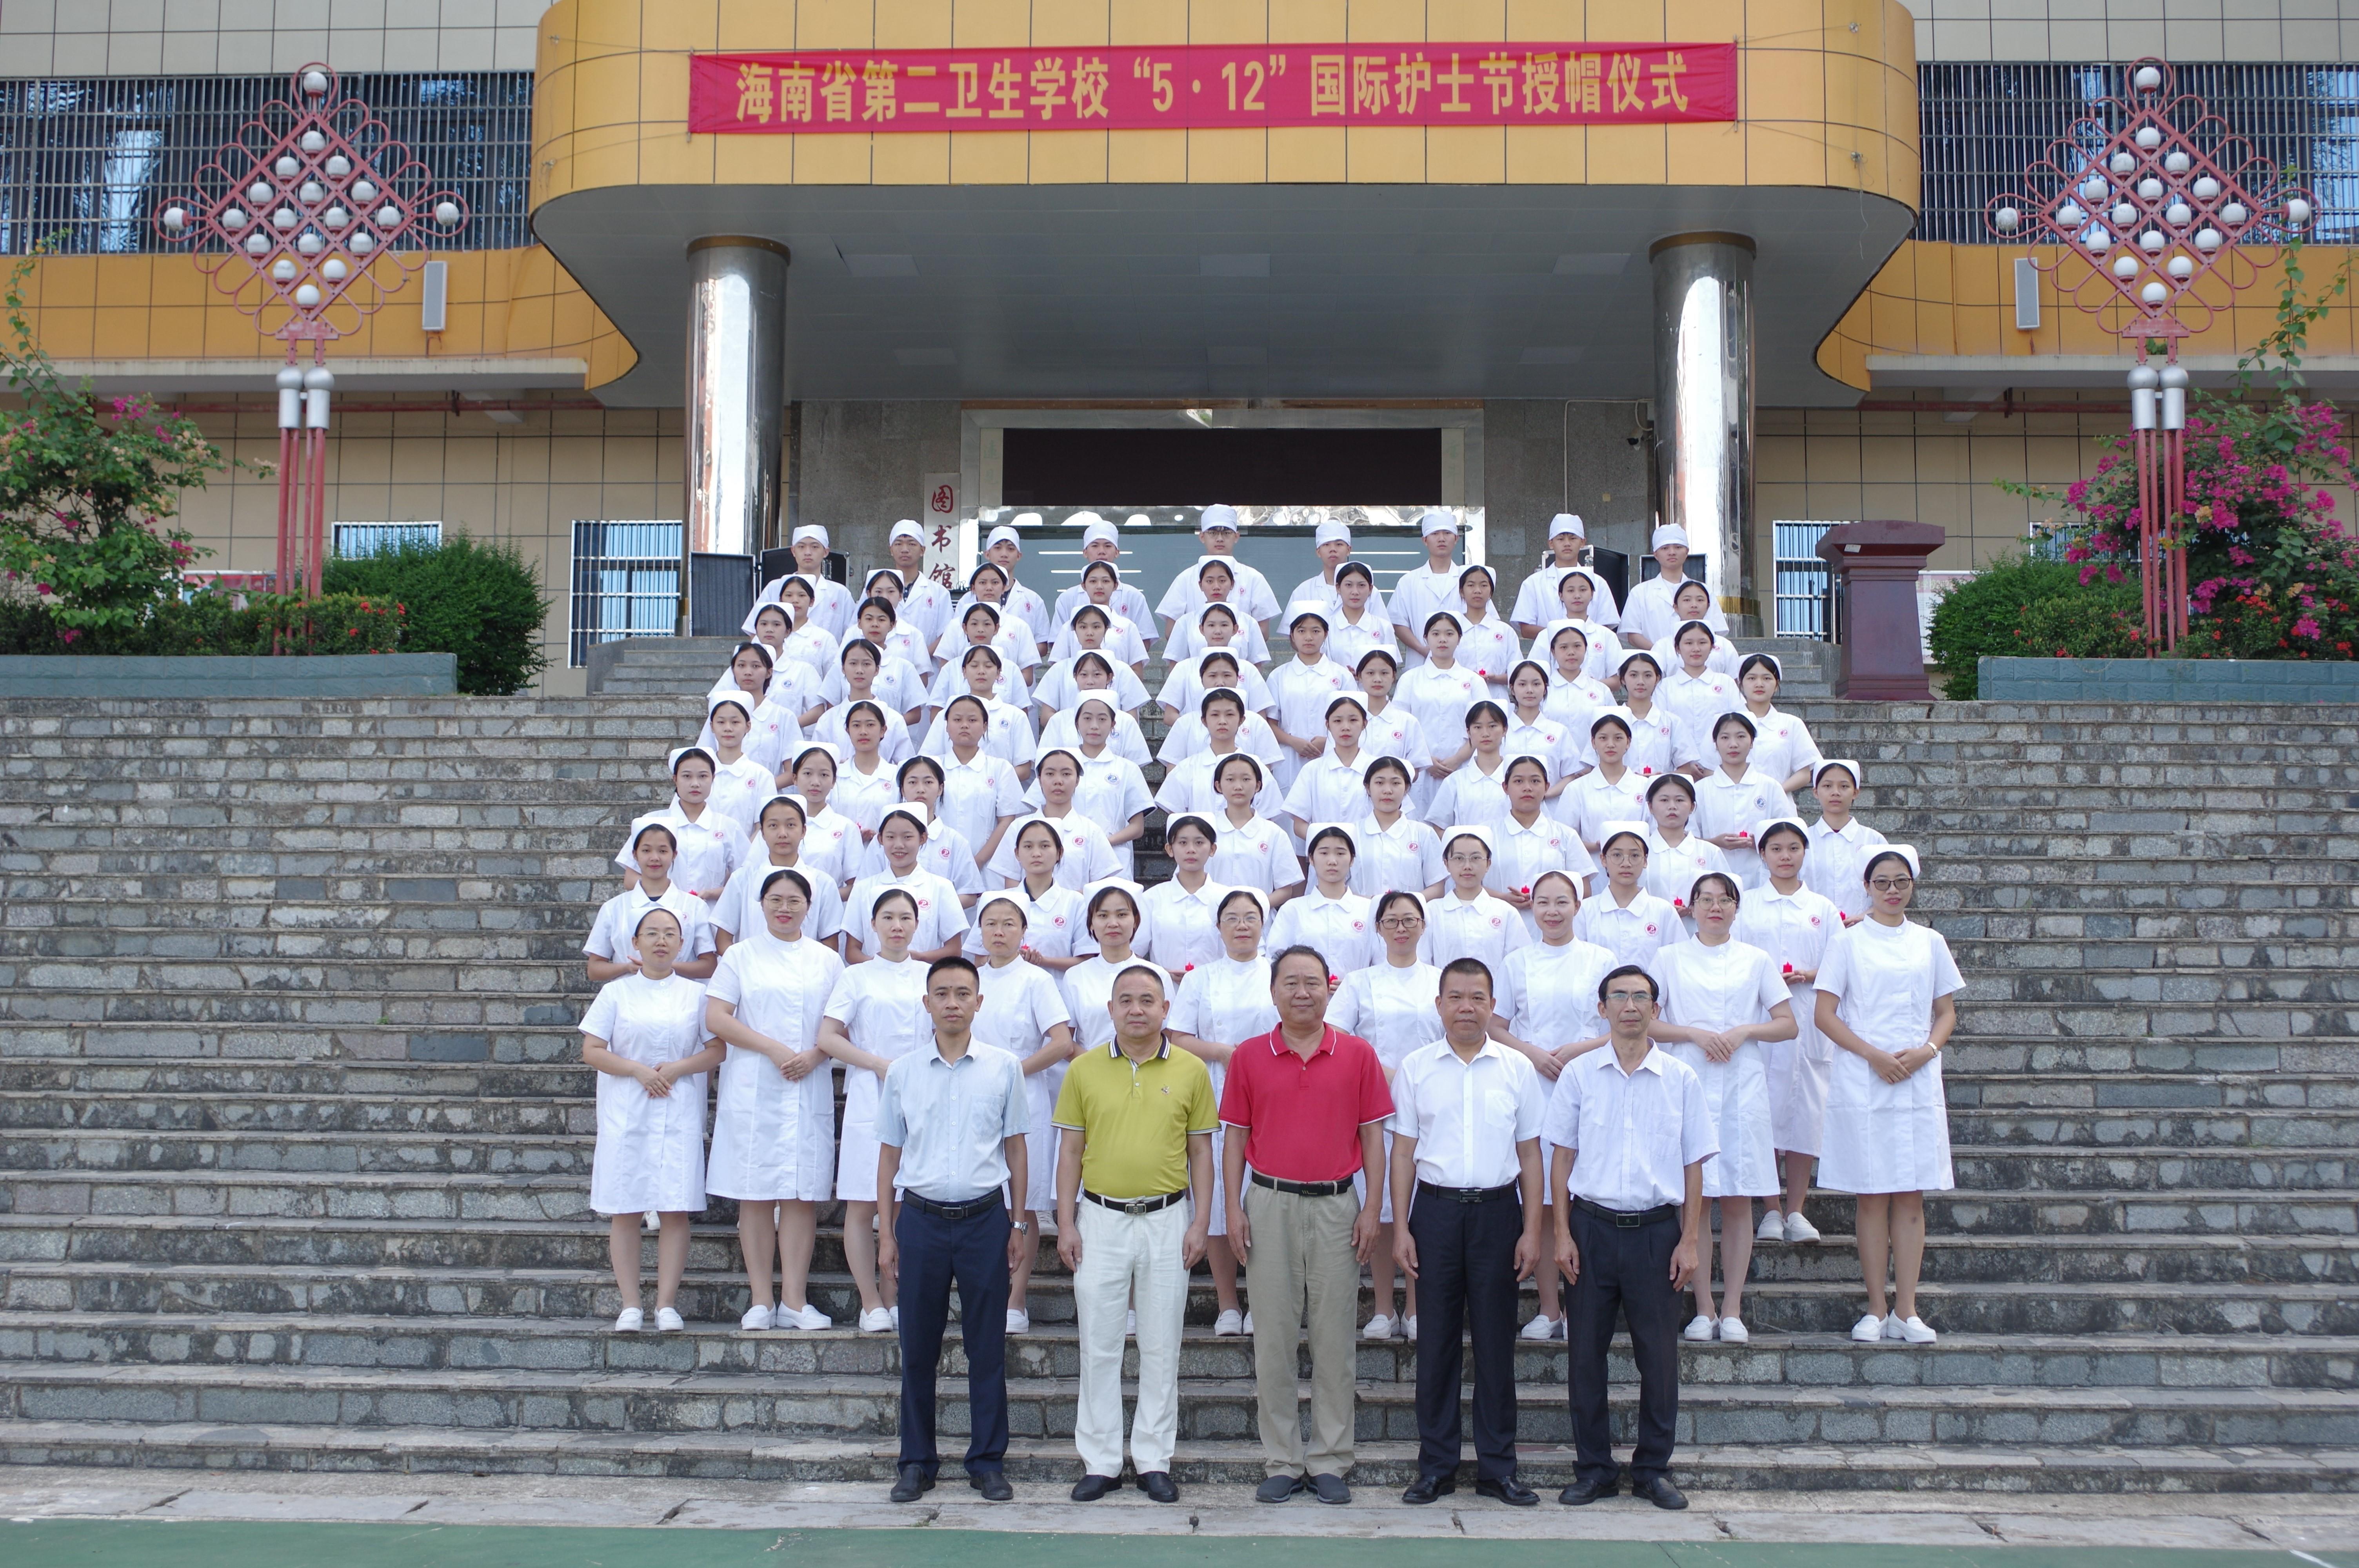 一袭白衣身上披 意气风发向未来——海南省第二卫生学校举行“5·12”国际护士节授帽仪式